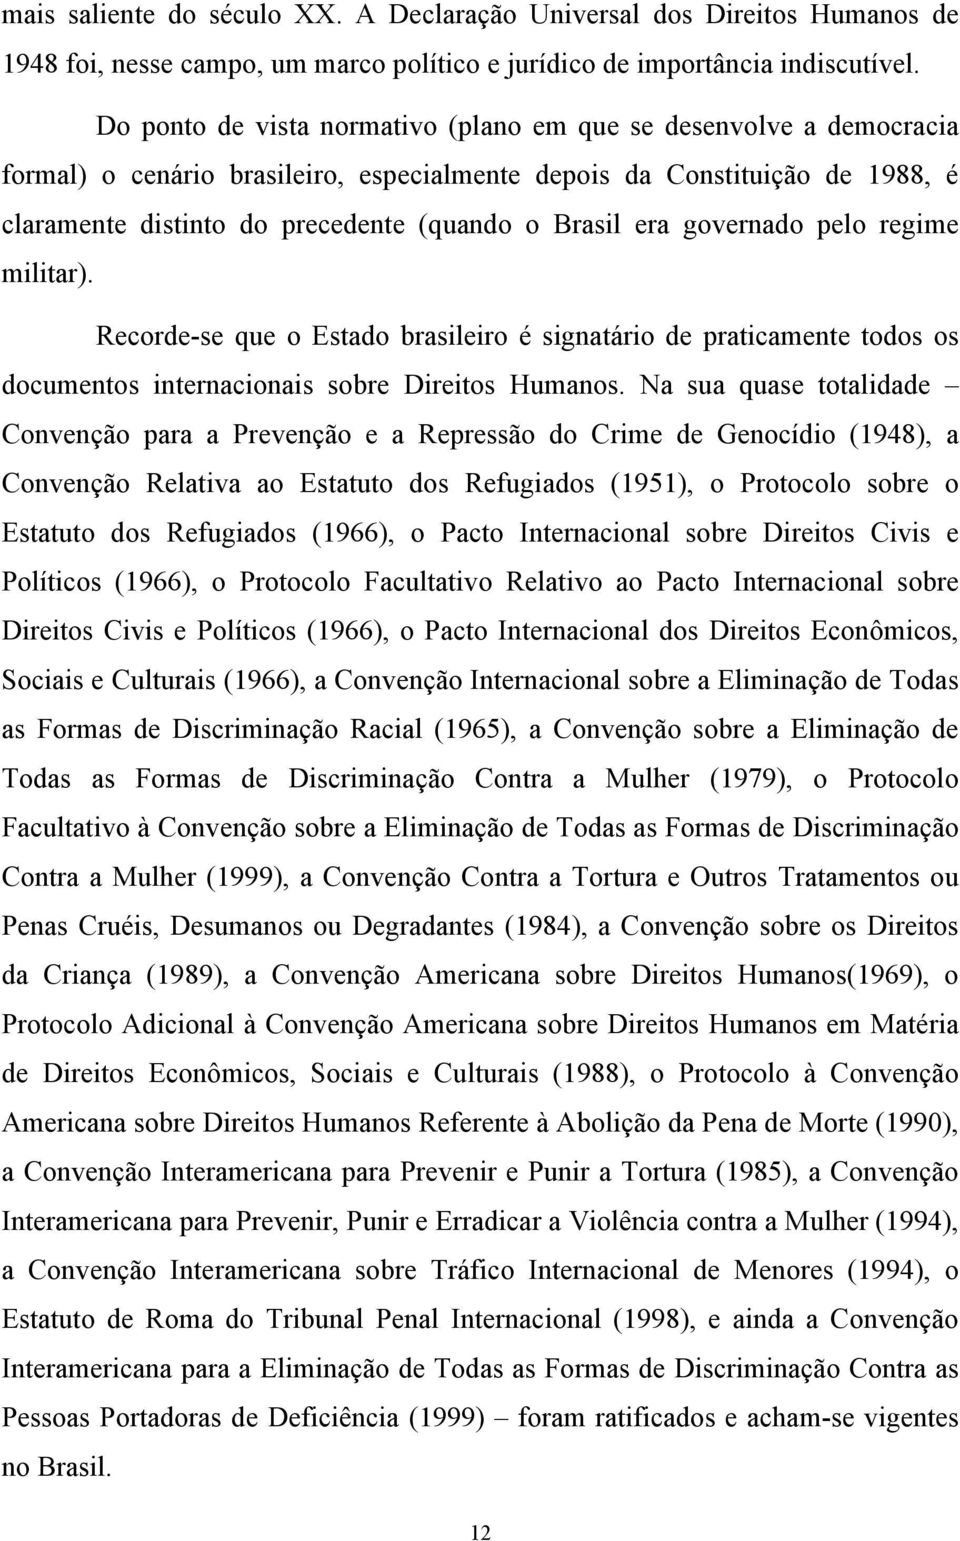 era governado pelo regime militar). Recorde-se que o Estado brasileiro é signatário de praticamente todos os documentos internacionais sobre Direitos Humanos.